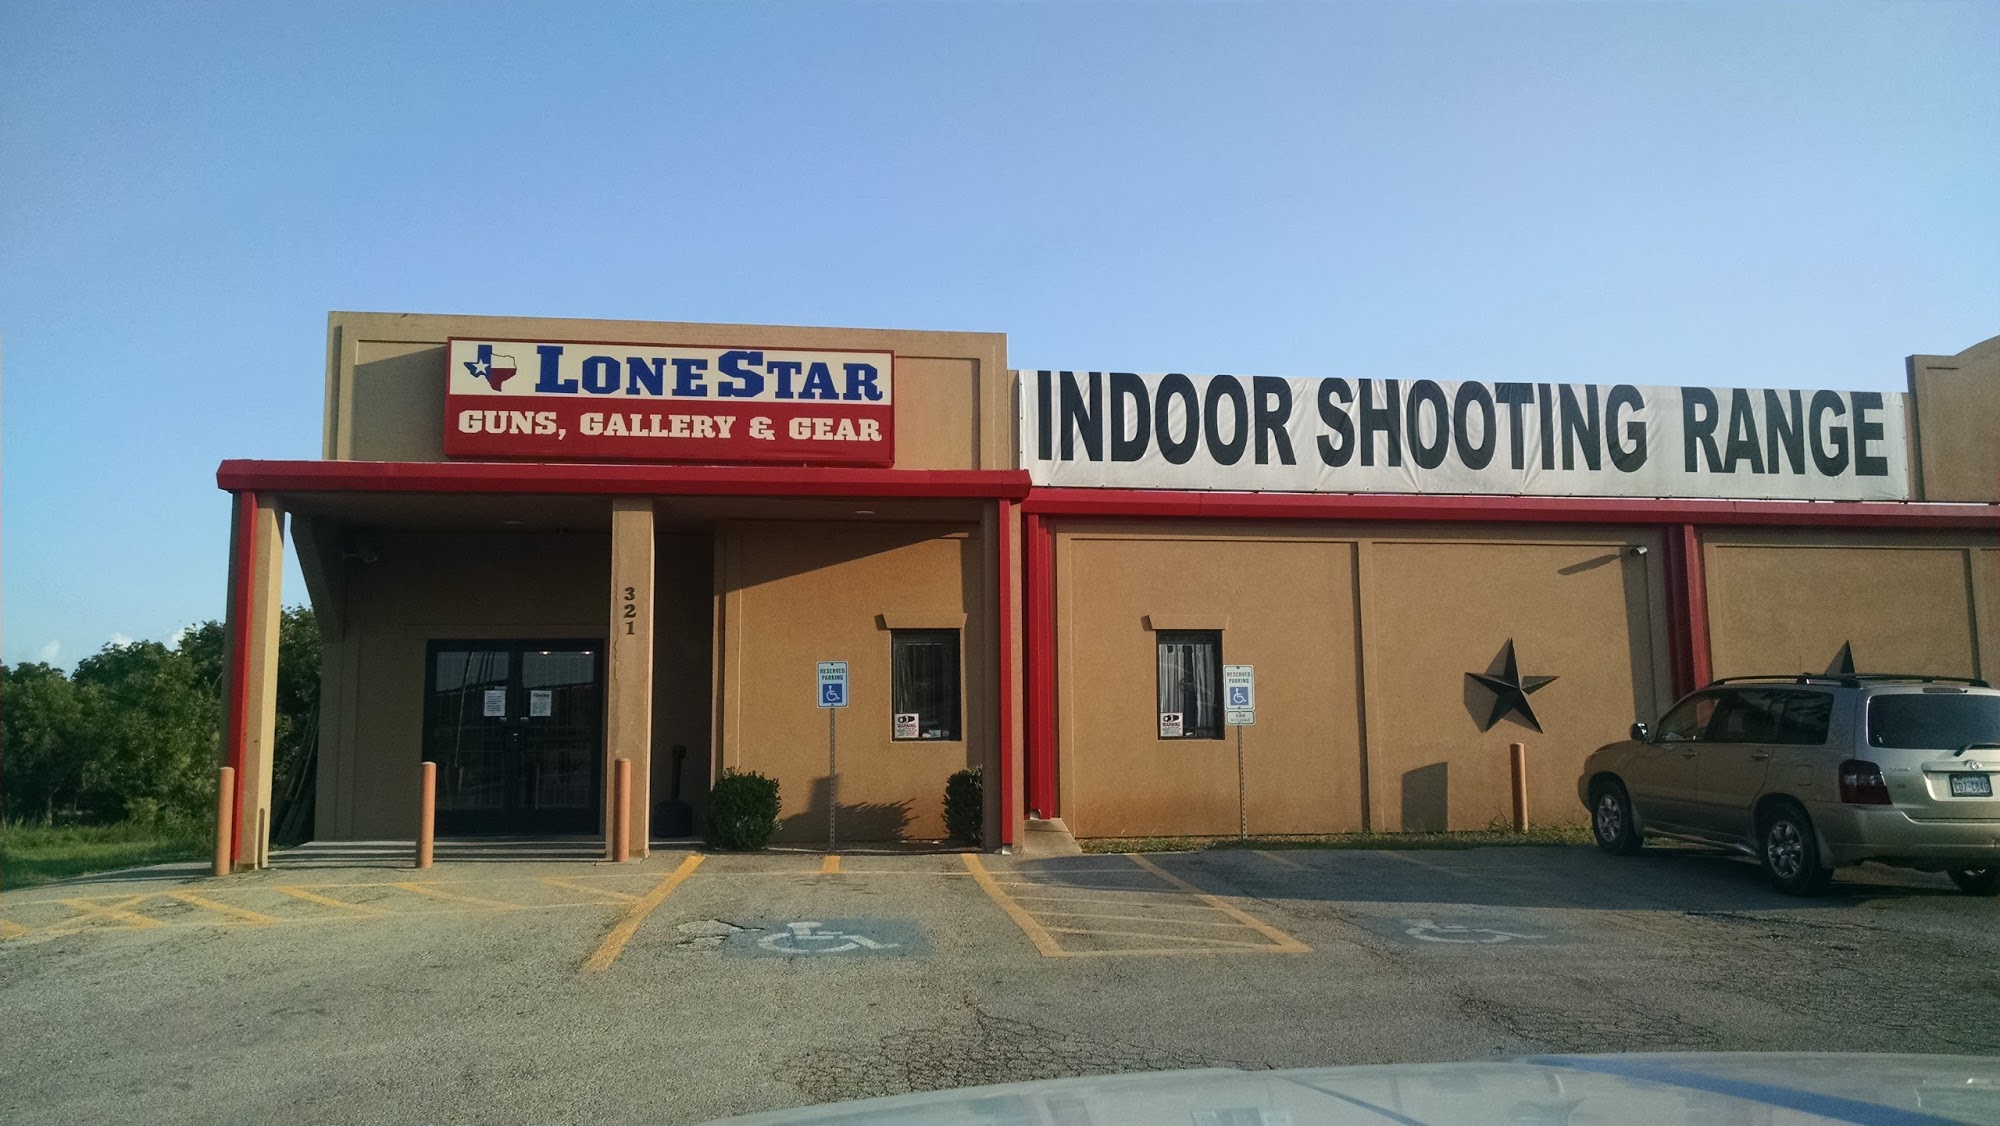 Lone Star Guns Gallery & Gear